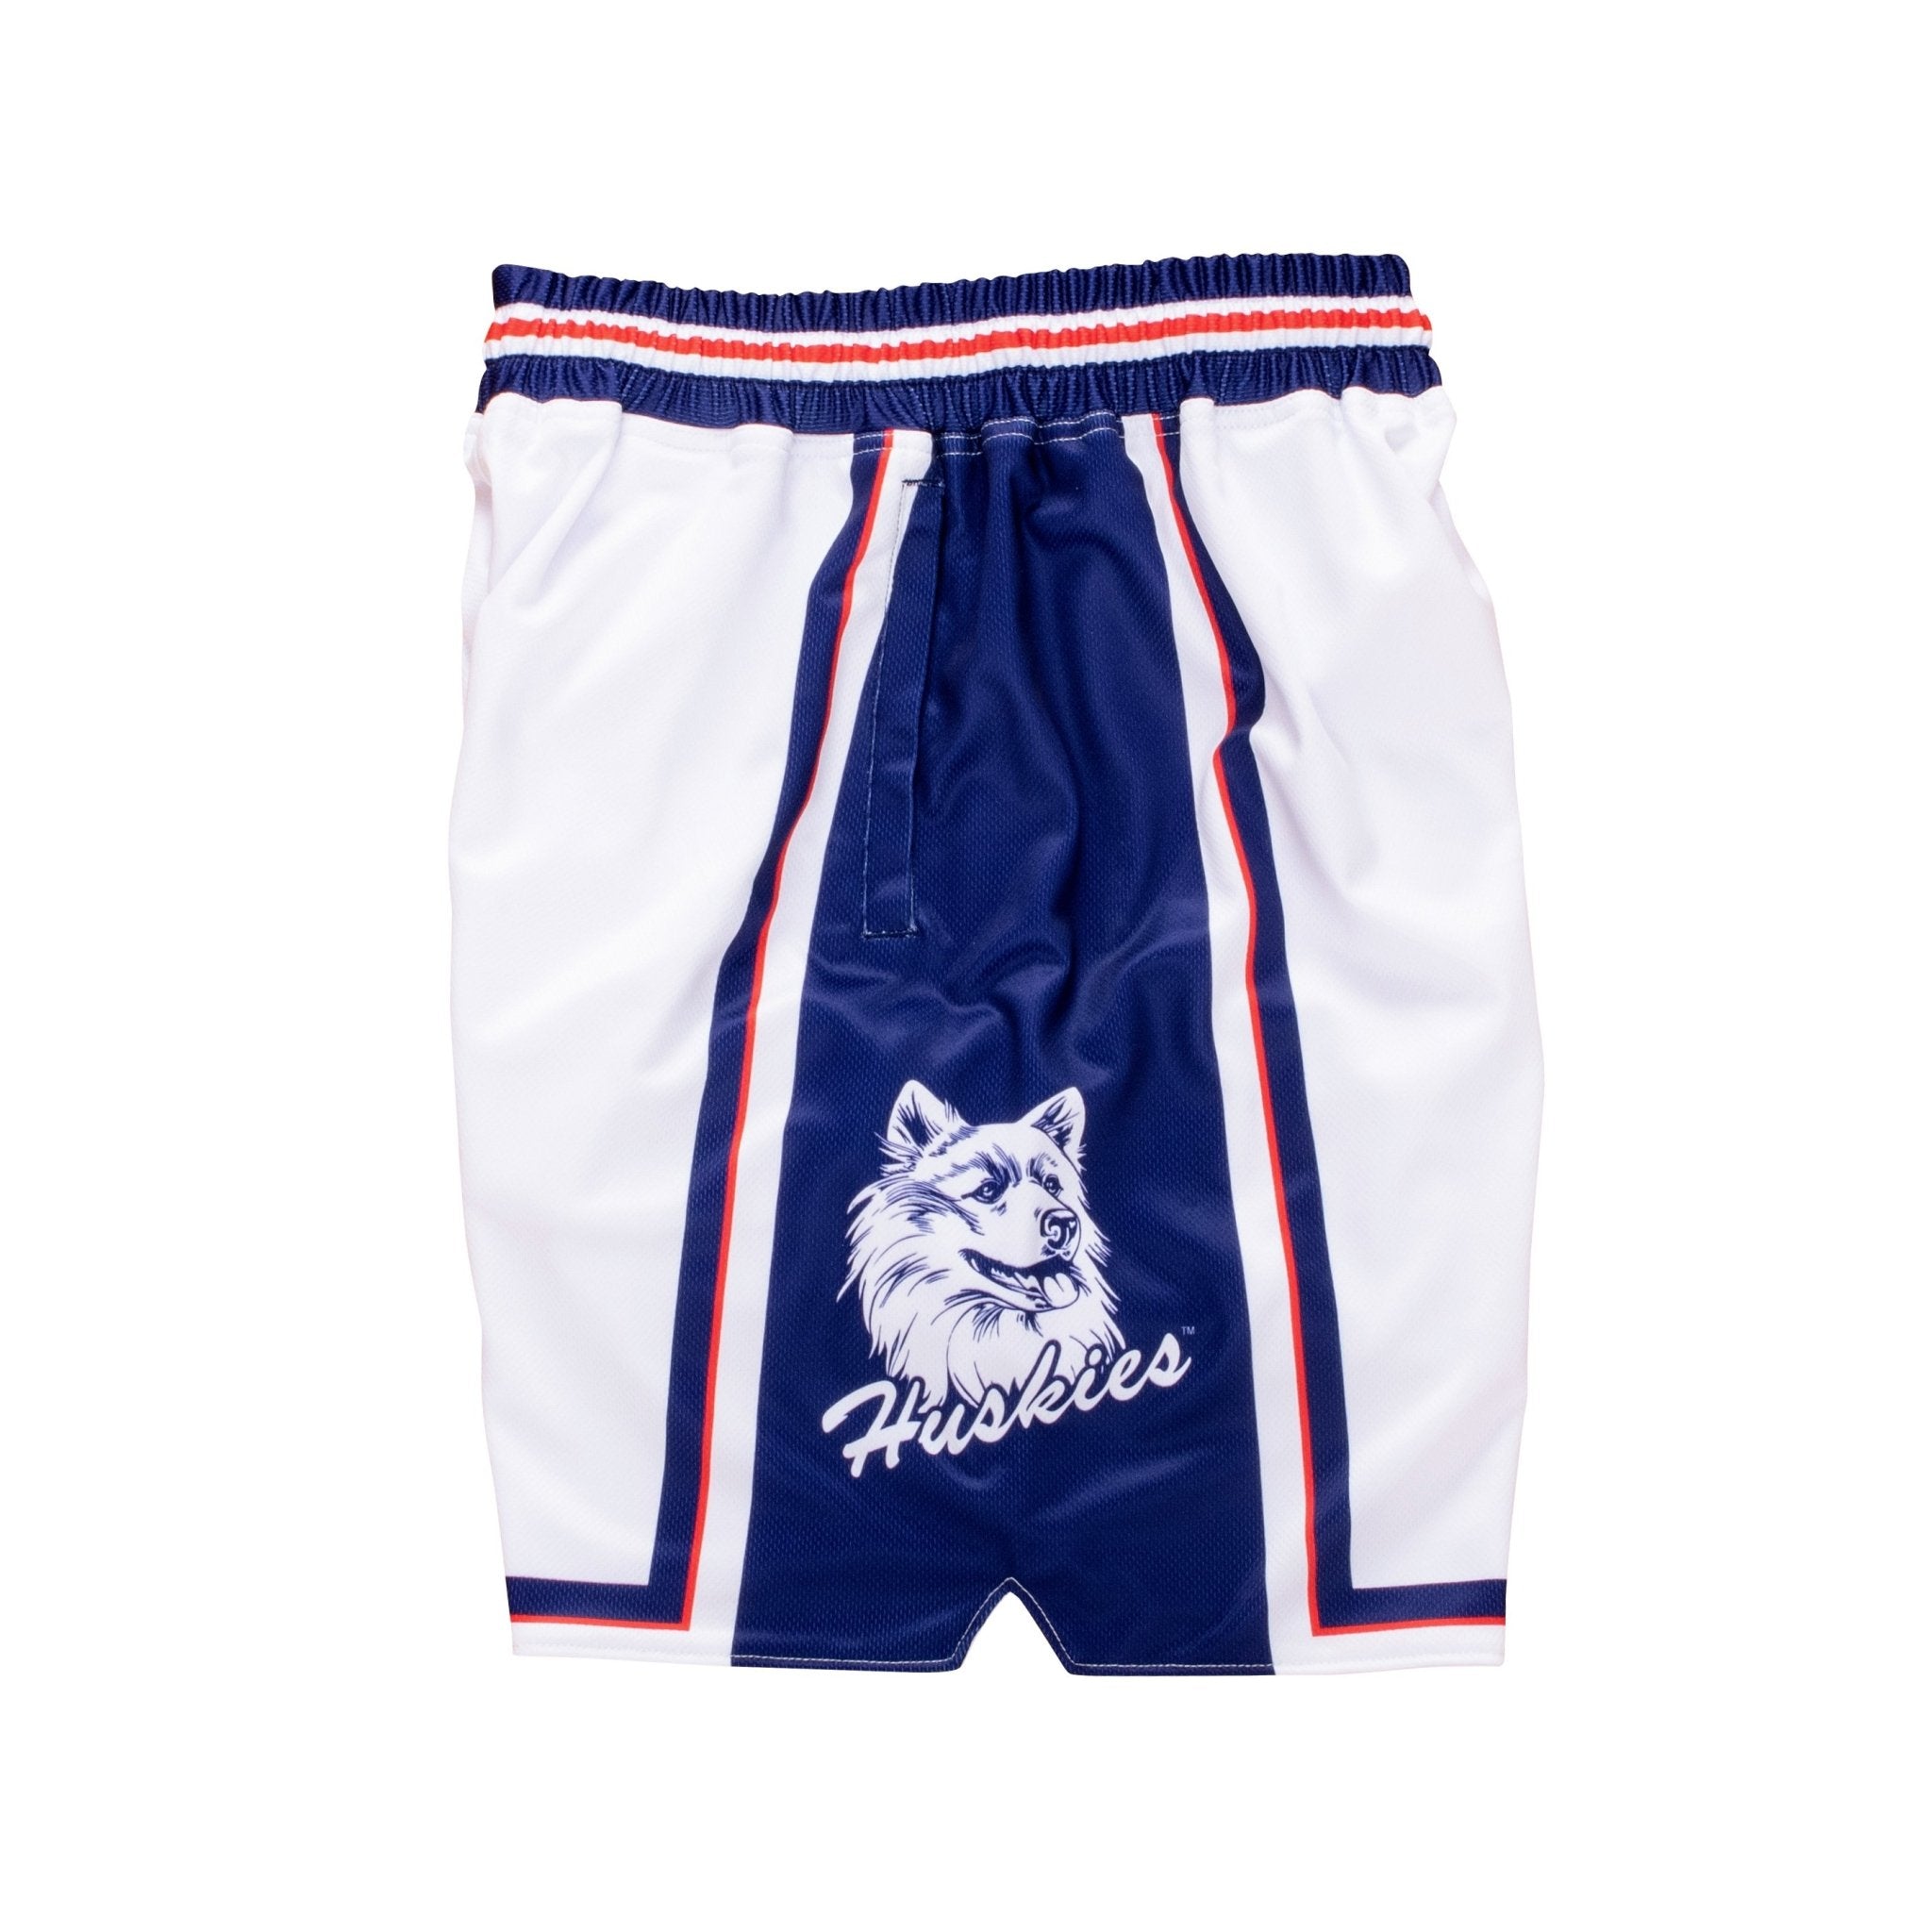 Vintage Washington Huskies Basketball Shorts Size Medium - ShopperBoard